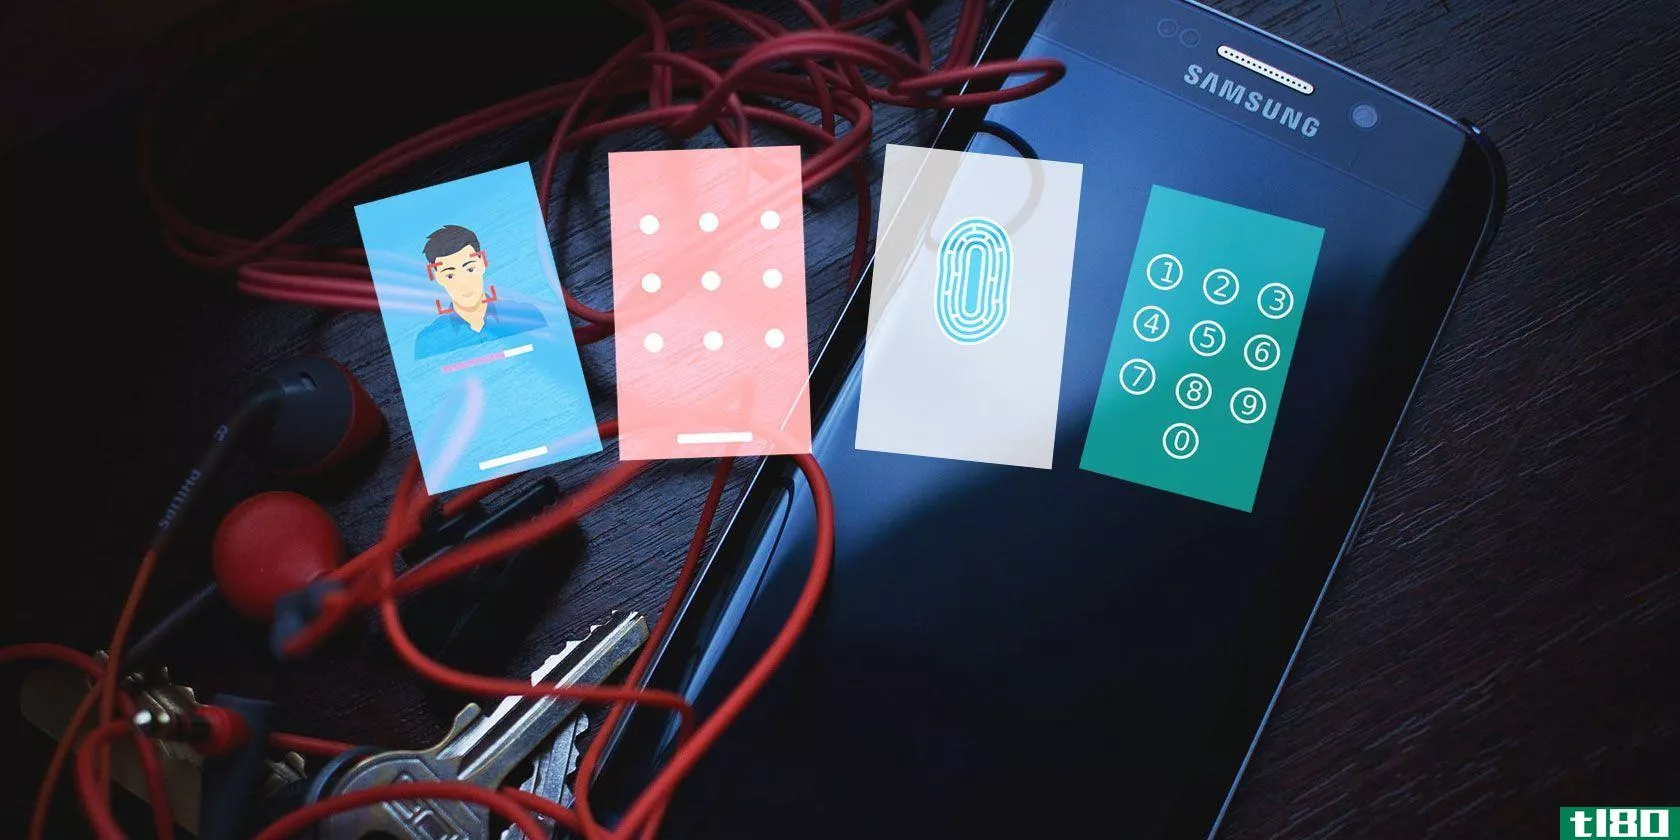 密码、pin码、指纹：锁定android手机的最佳方式